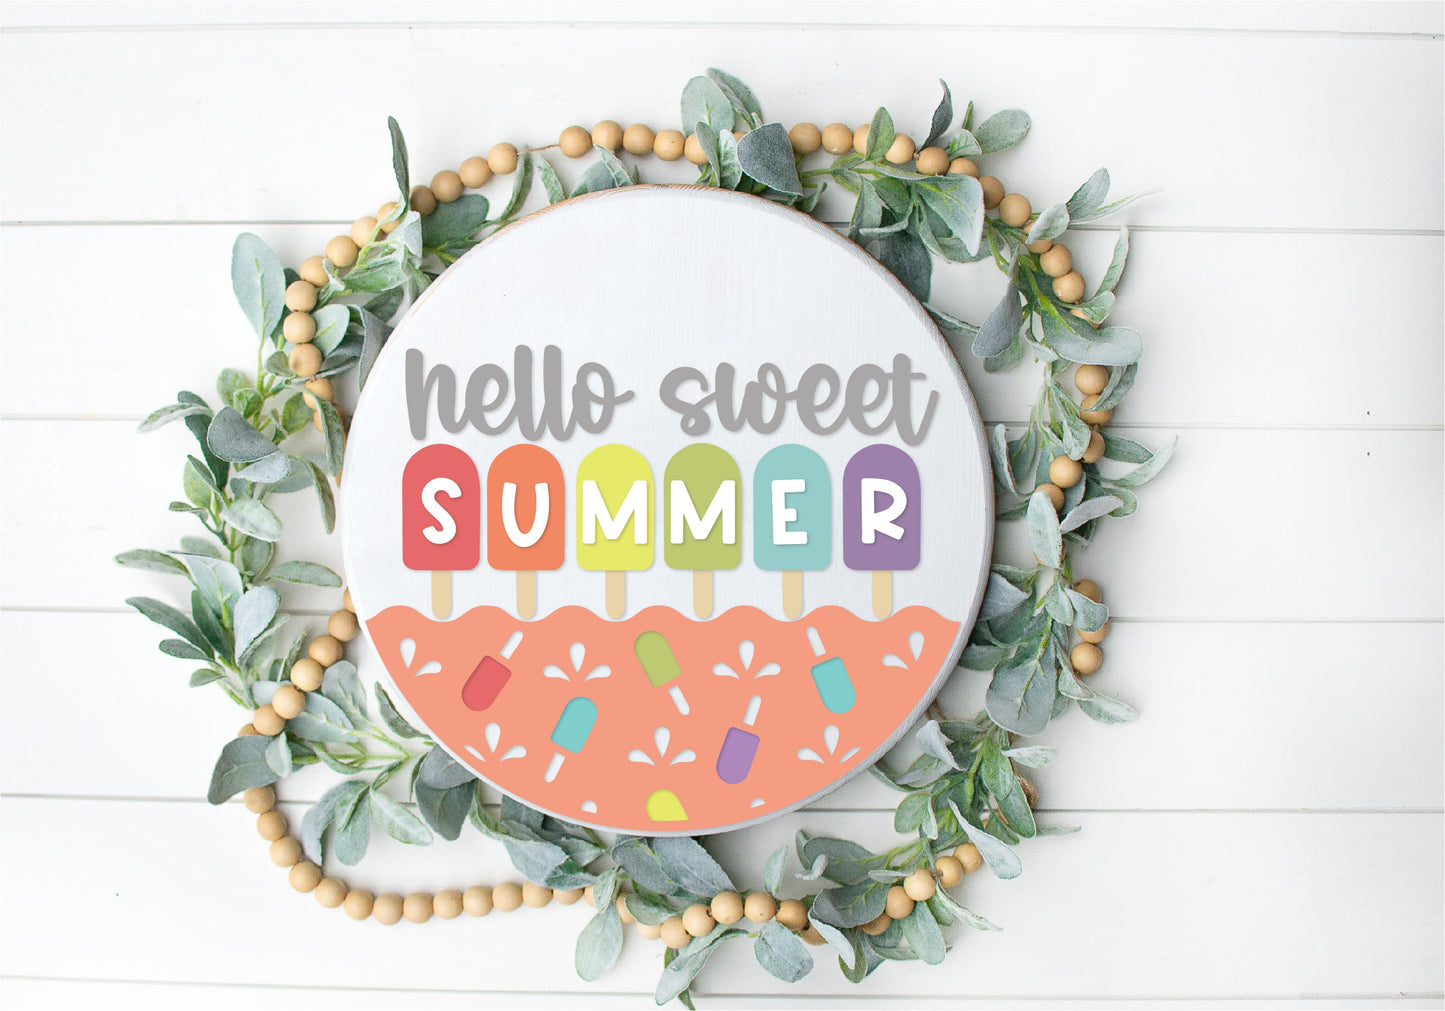 Sweet summer popsicle DIY sign